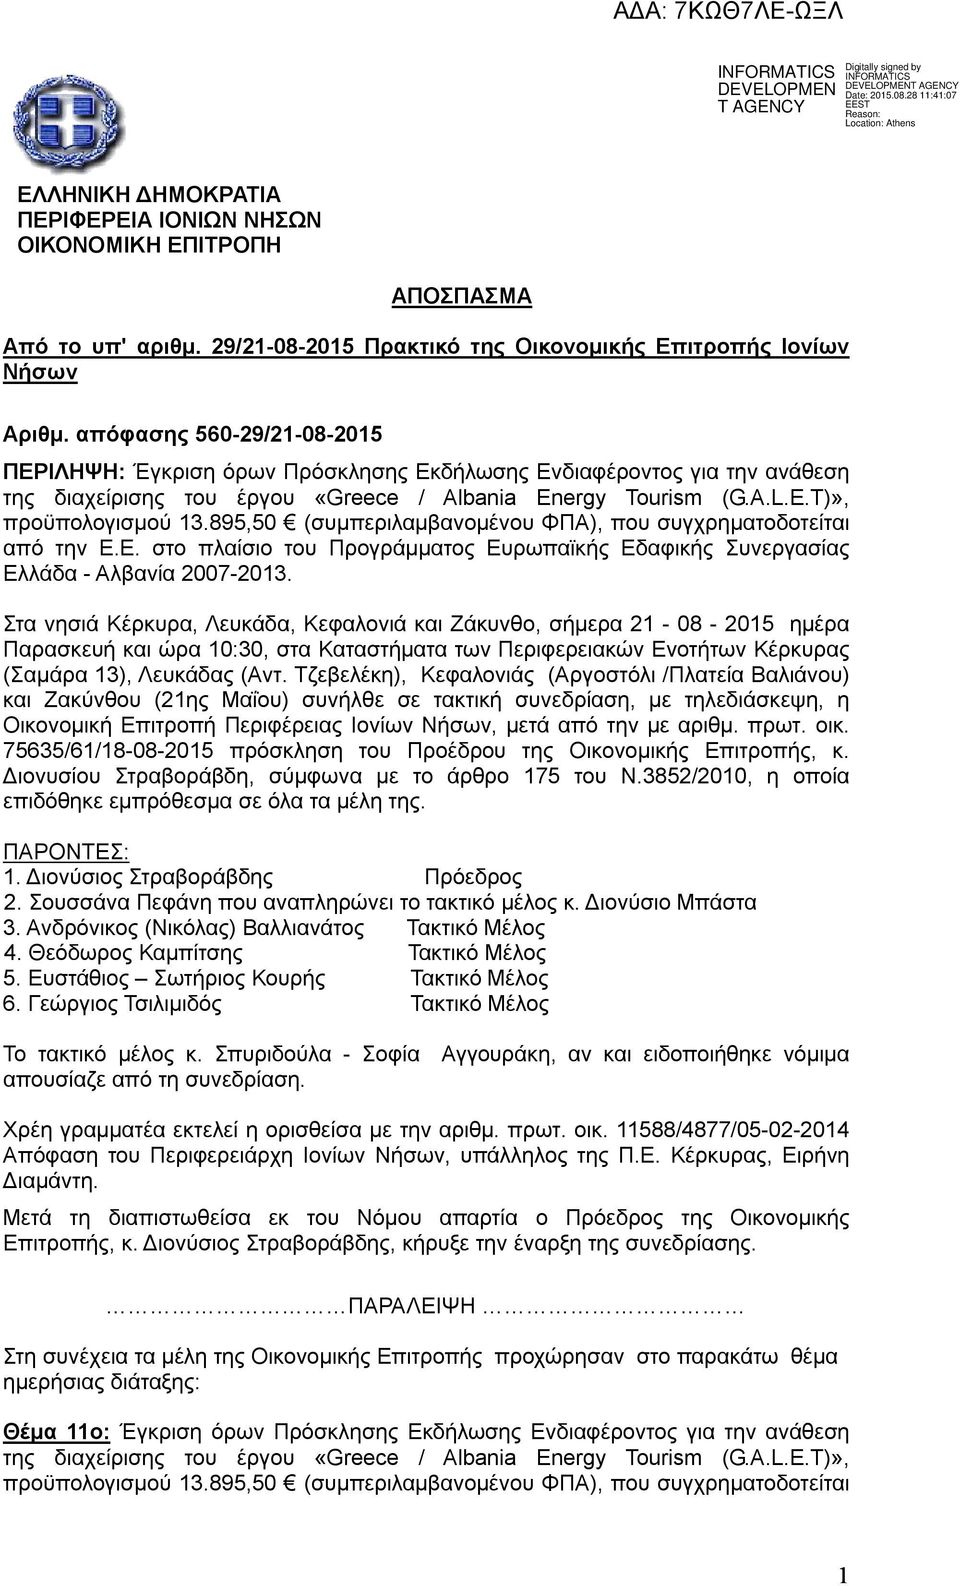 895,50 (συμπεριλαμβανομένου ΦΠΑ), που συγχρηματοδοτείται από την Ε.Ε. στο πλαίσιο του Προγράμματος Ευρωπαϊκής Εδαφικής Συνεργασίας Ελλάδα - Αλβανία 2007-2013.